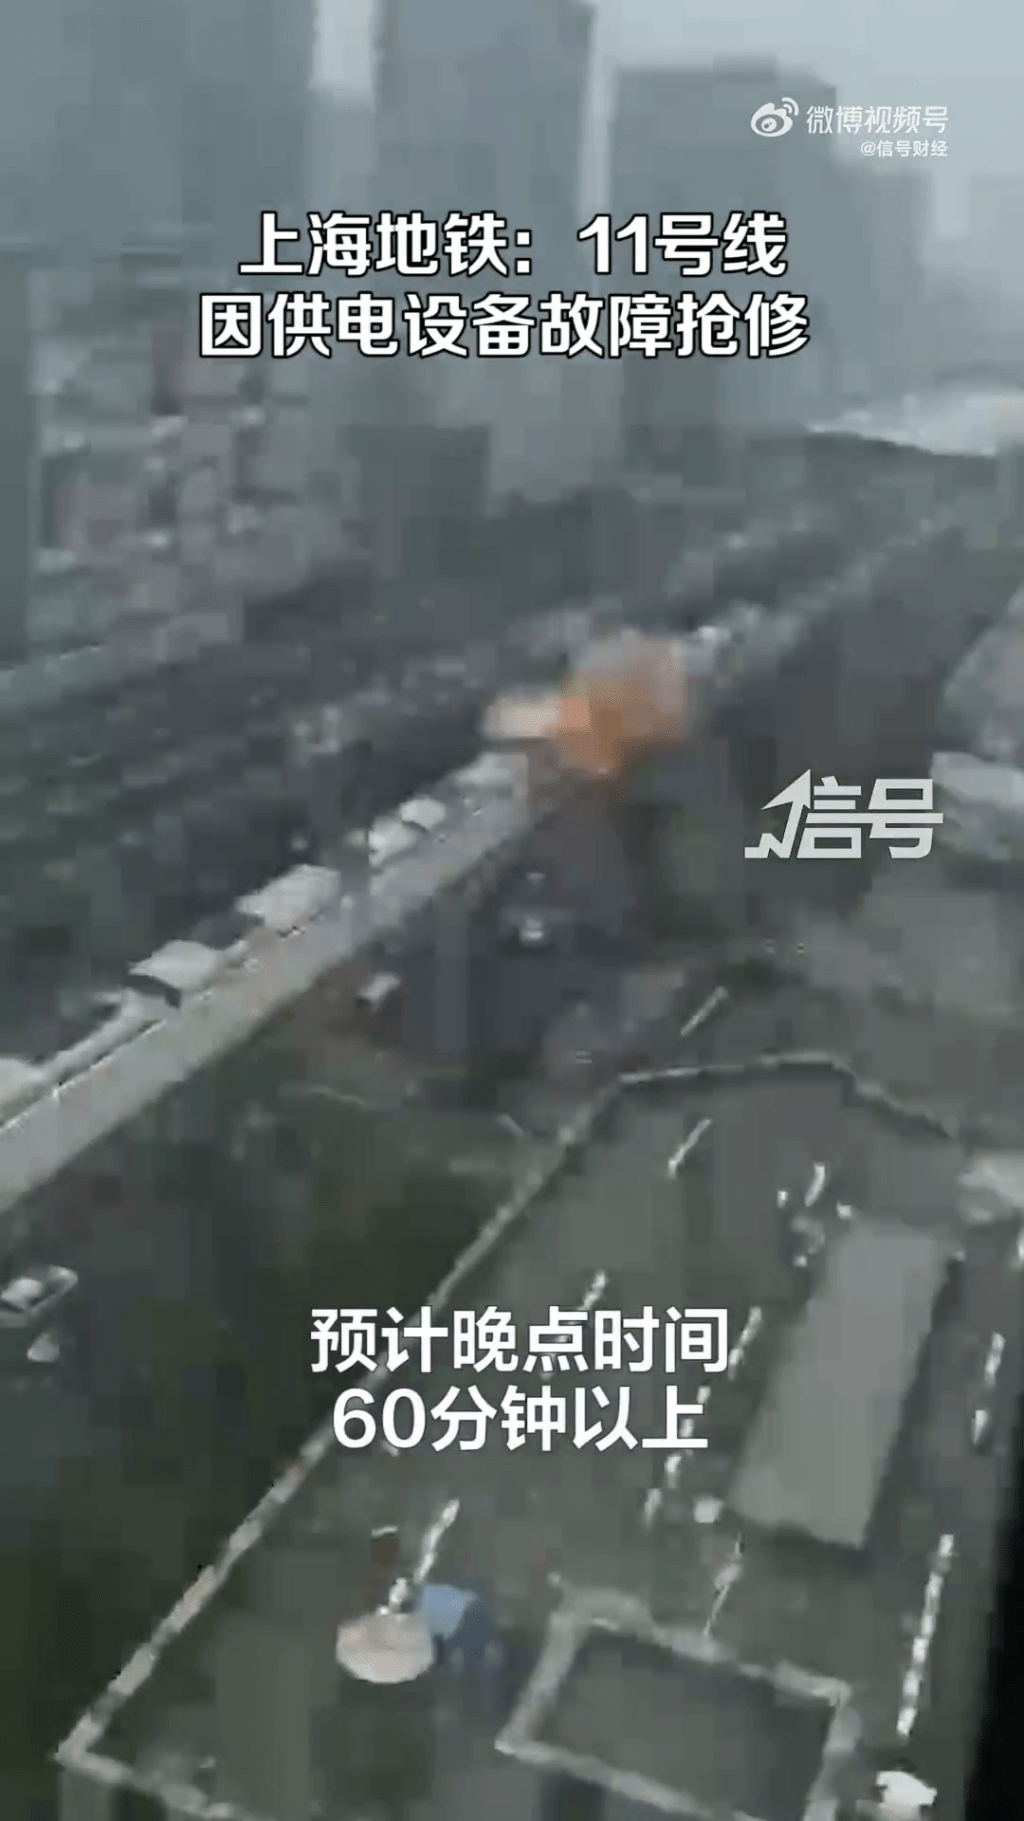 上海地鐵稱未引發火災爆炸。目前，正在全力搶修中。